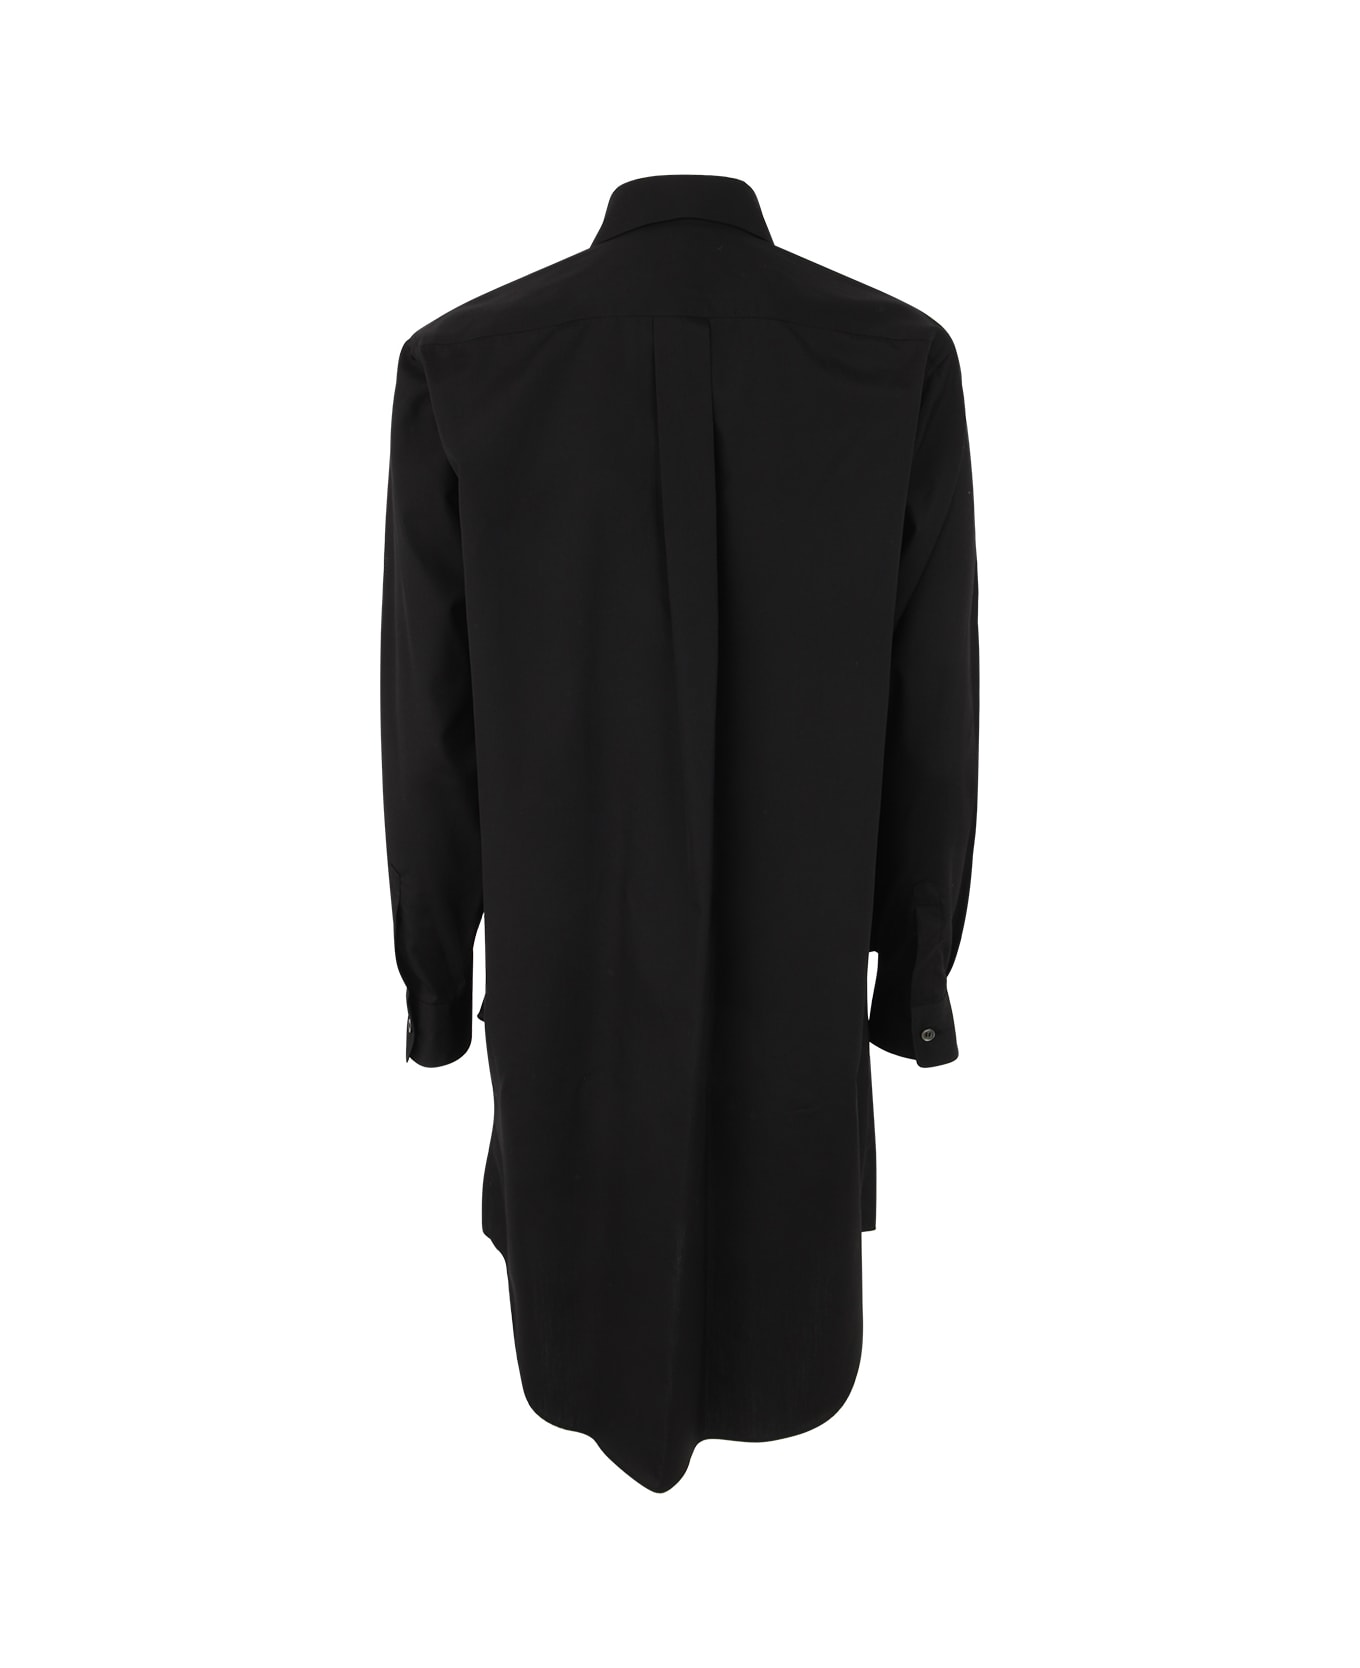 Comme des Garçons Comme des Garçons Ladies Blouse - Black コート